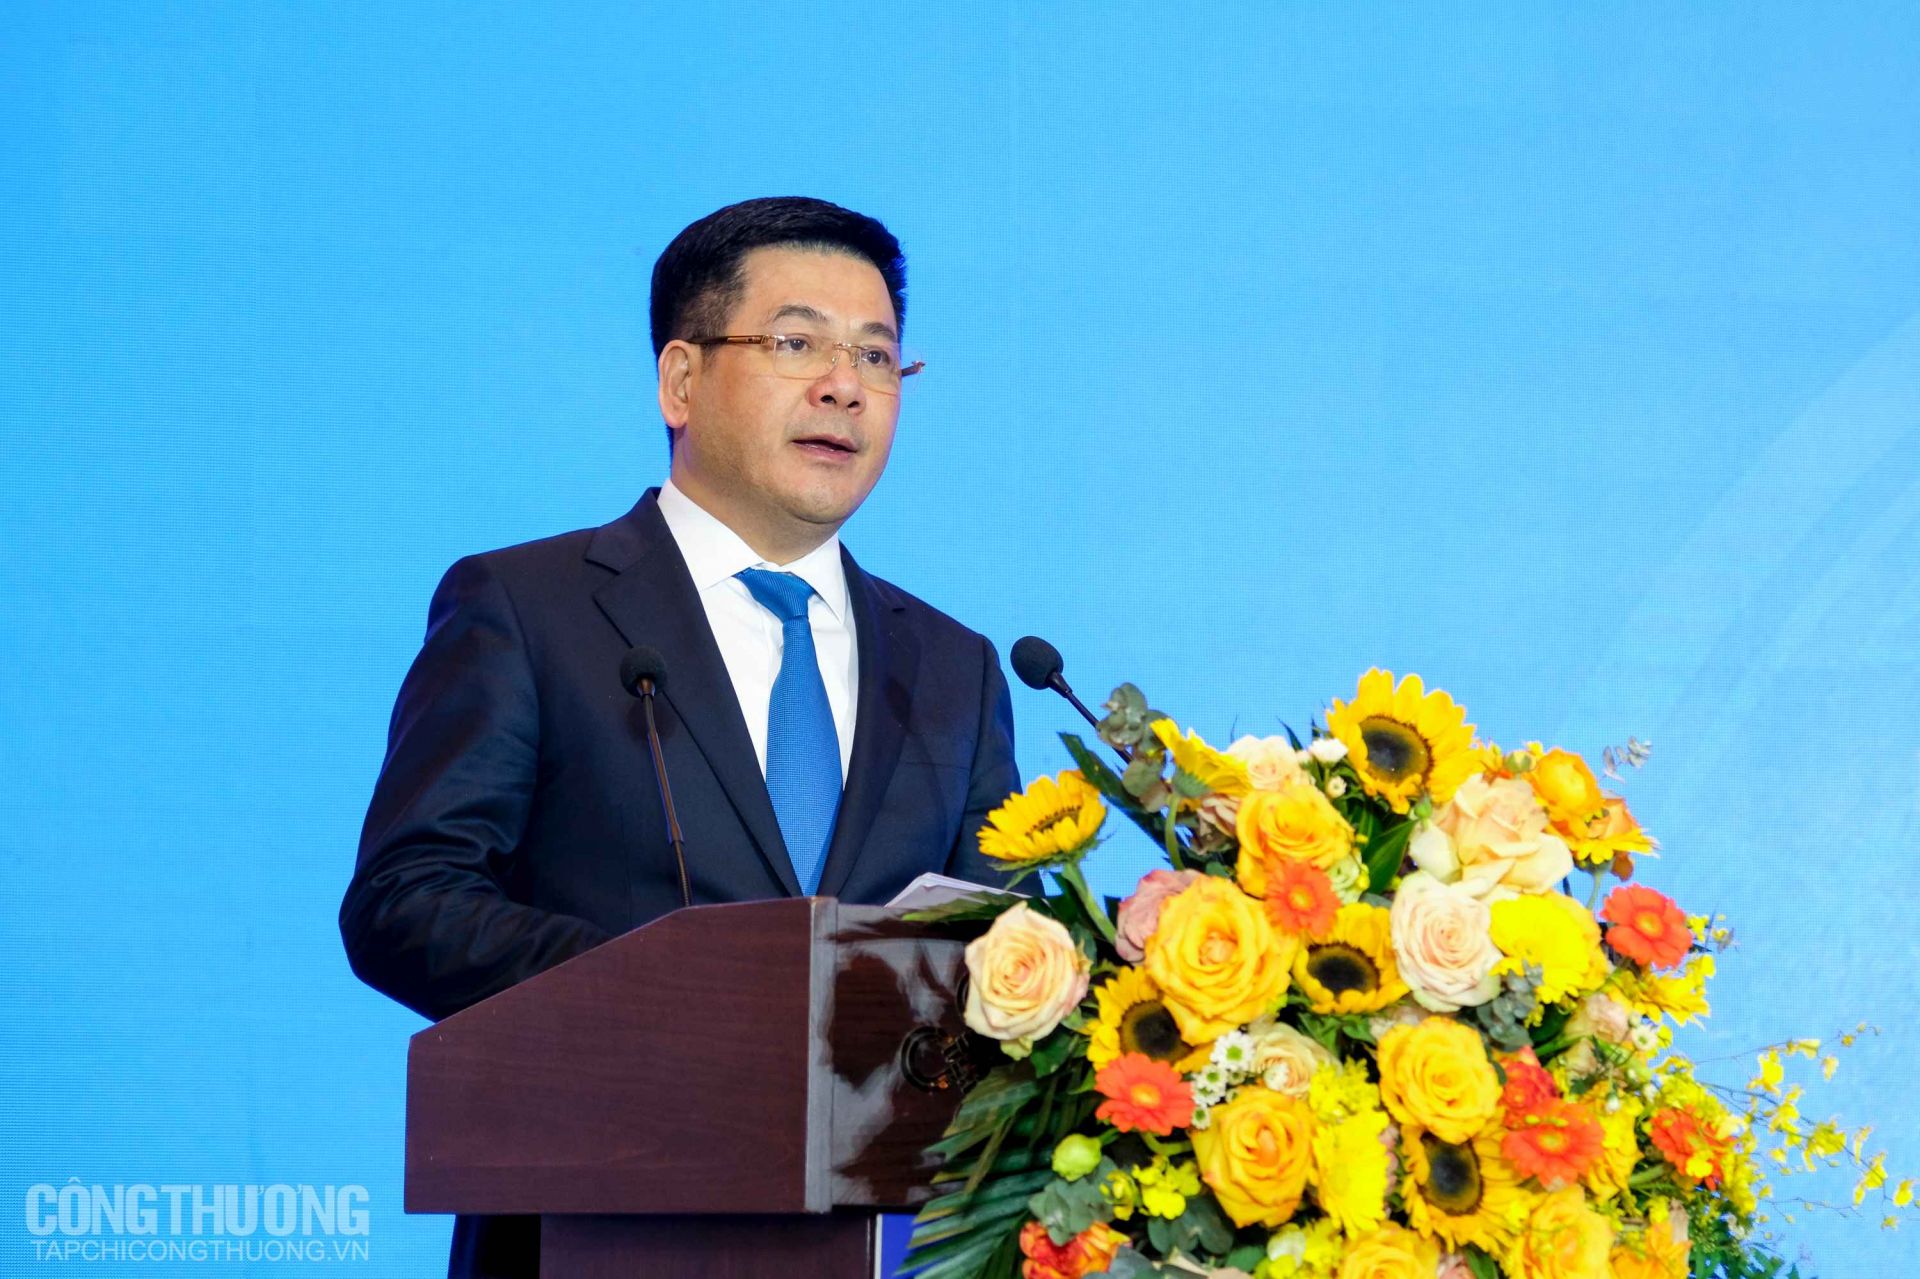 Bộ trưởng Nguyễn Hồng Diên phát biểu tại ội nghị kết nối hợp tác kinh tế thương mại Việt Nam - Trung Quốc (Quảng Tây) trong thời kỳ mới